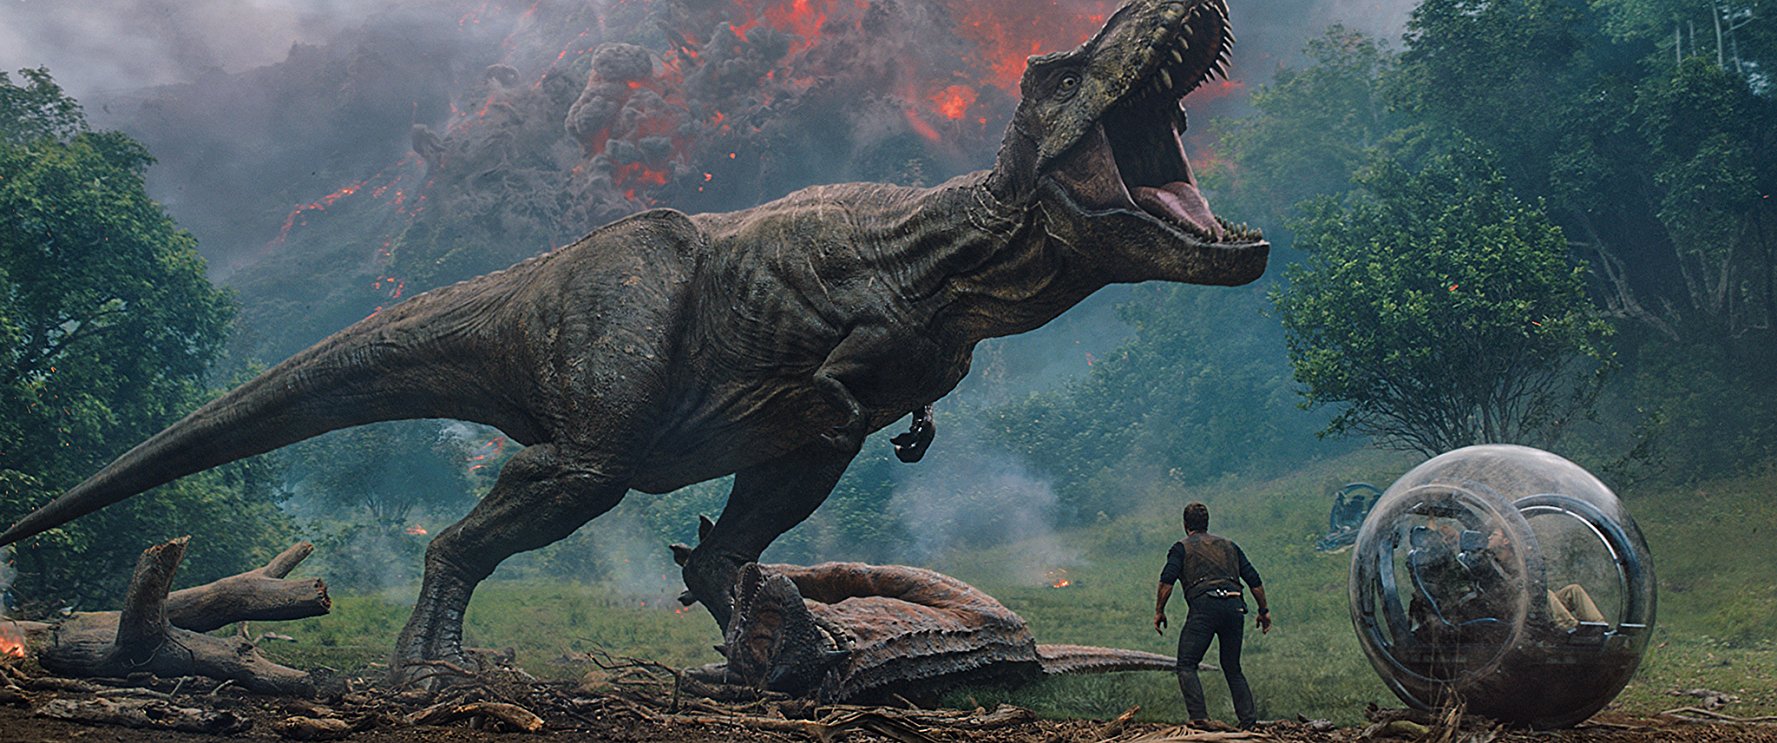 Jenis Jenis Dinosaurus Yang Akan Hadir Dalam Jurassic World Fallen Kingdom Greenscene